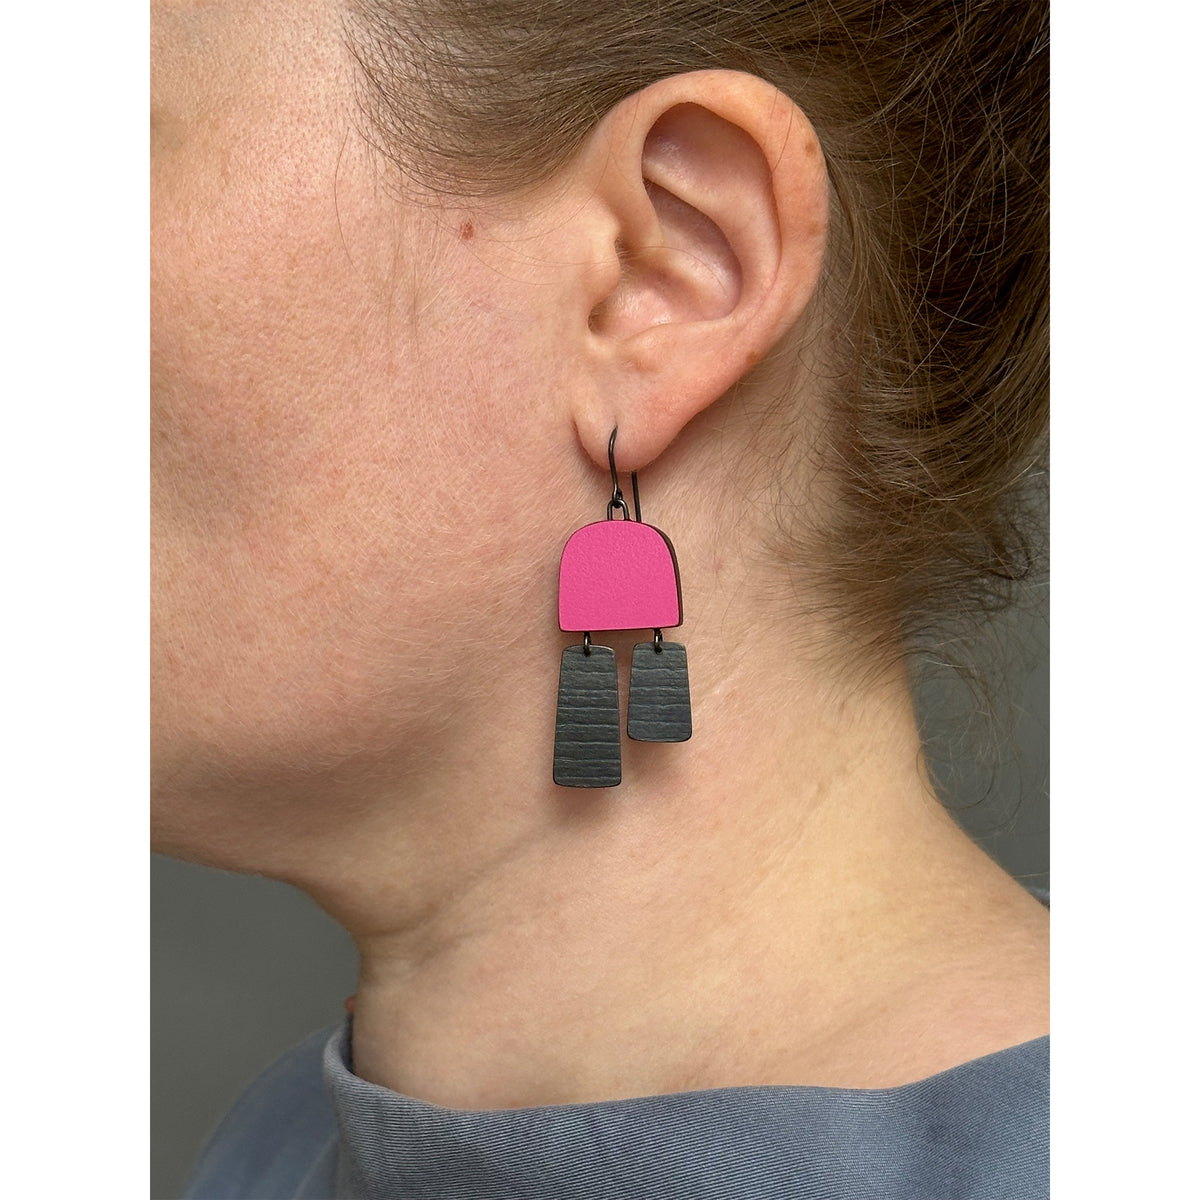 Two part stripe earrings - oxidised